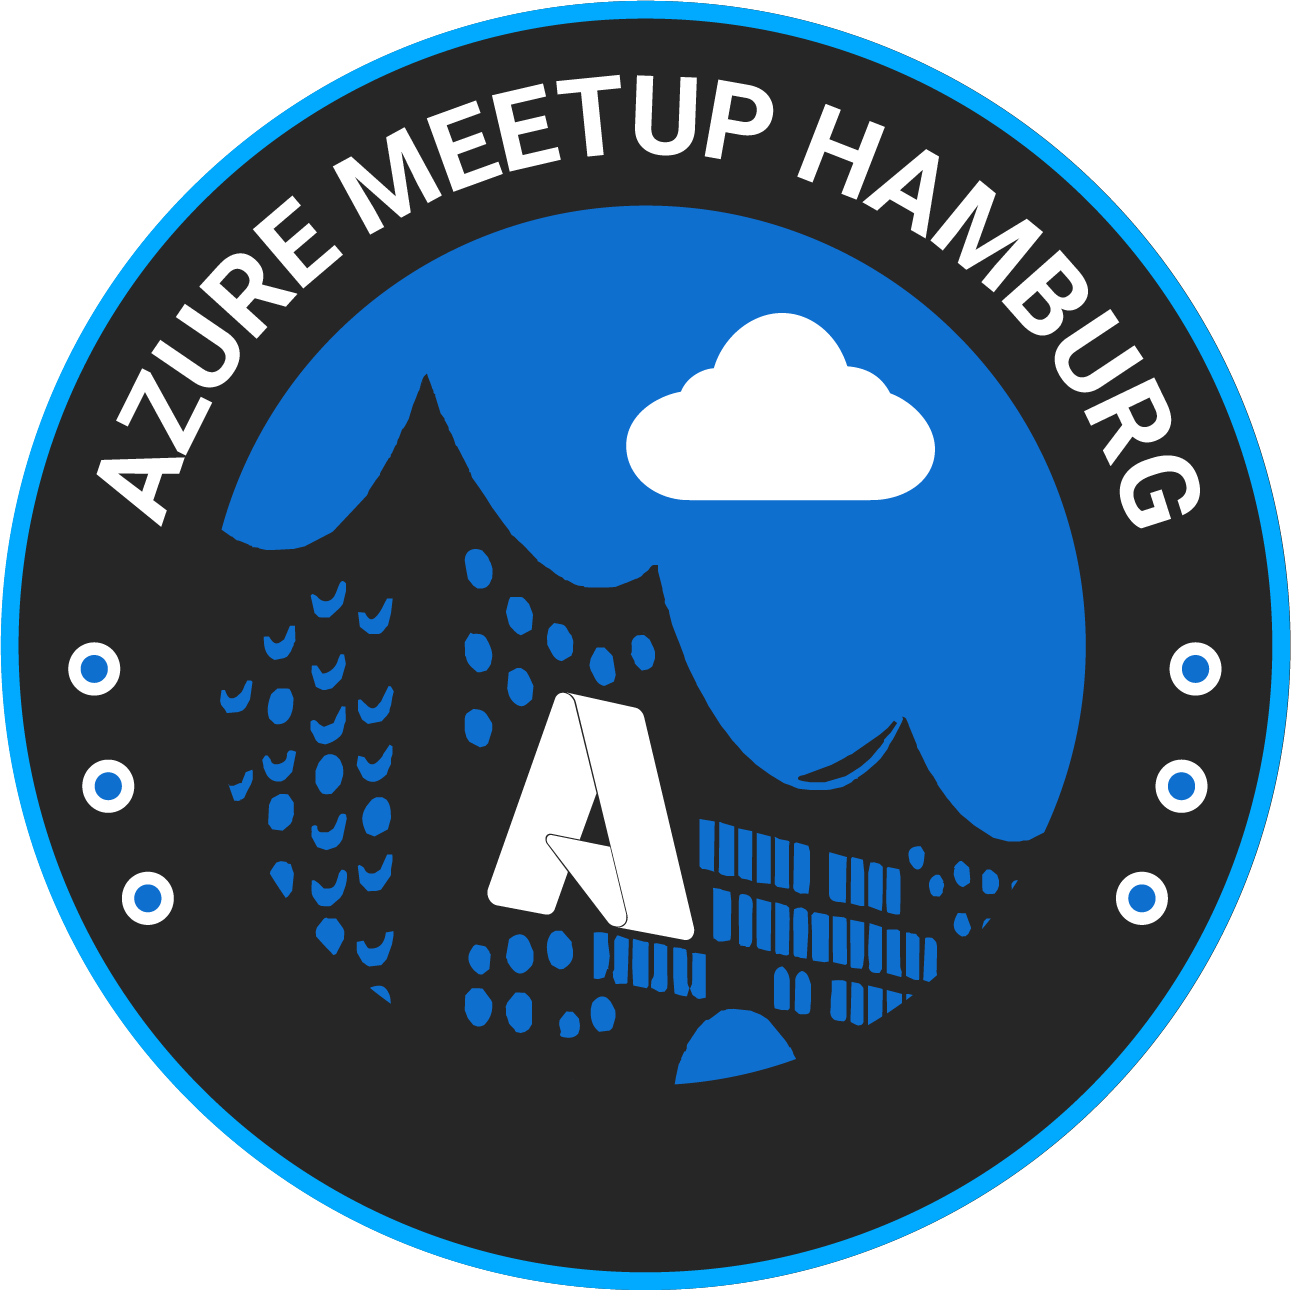 Azure Meetup Hamburg